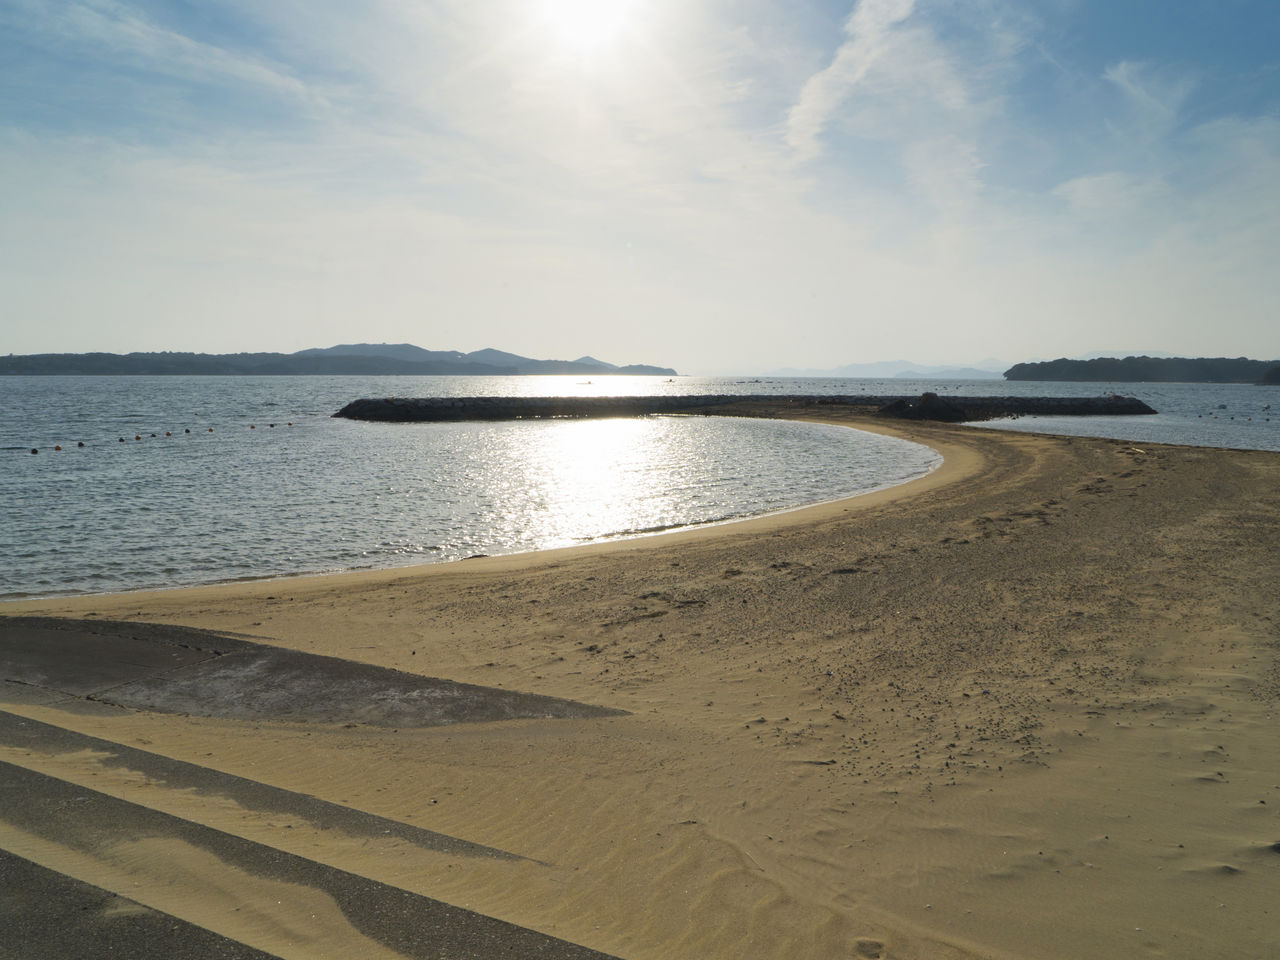 Приятный климат пляжа Масакидзима напоминает климат более южной части Японии. Остров находится в центре залива, благодаря чему воды здесь очень спокойные